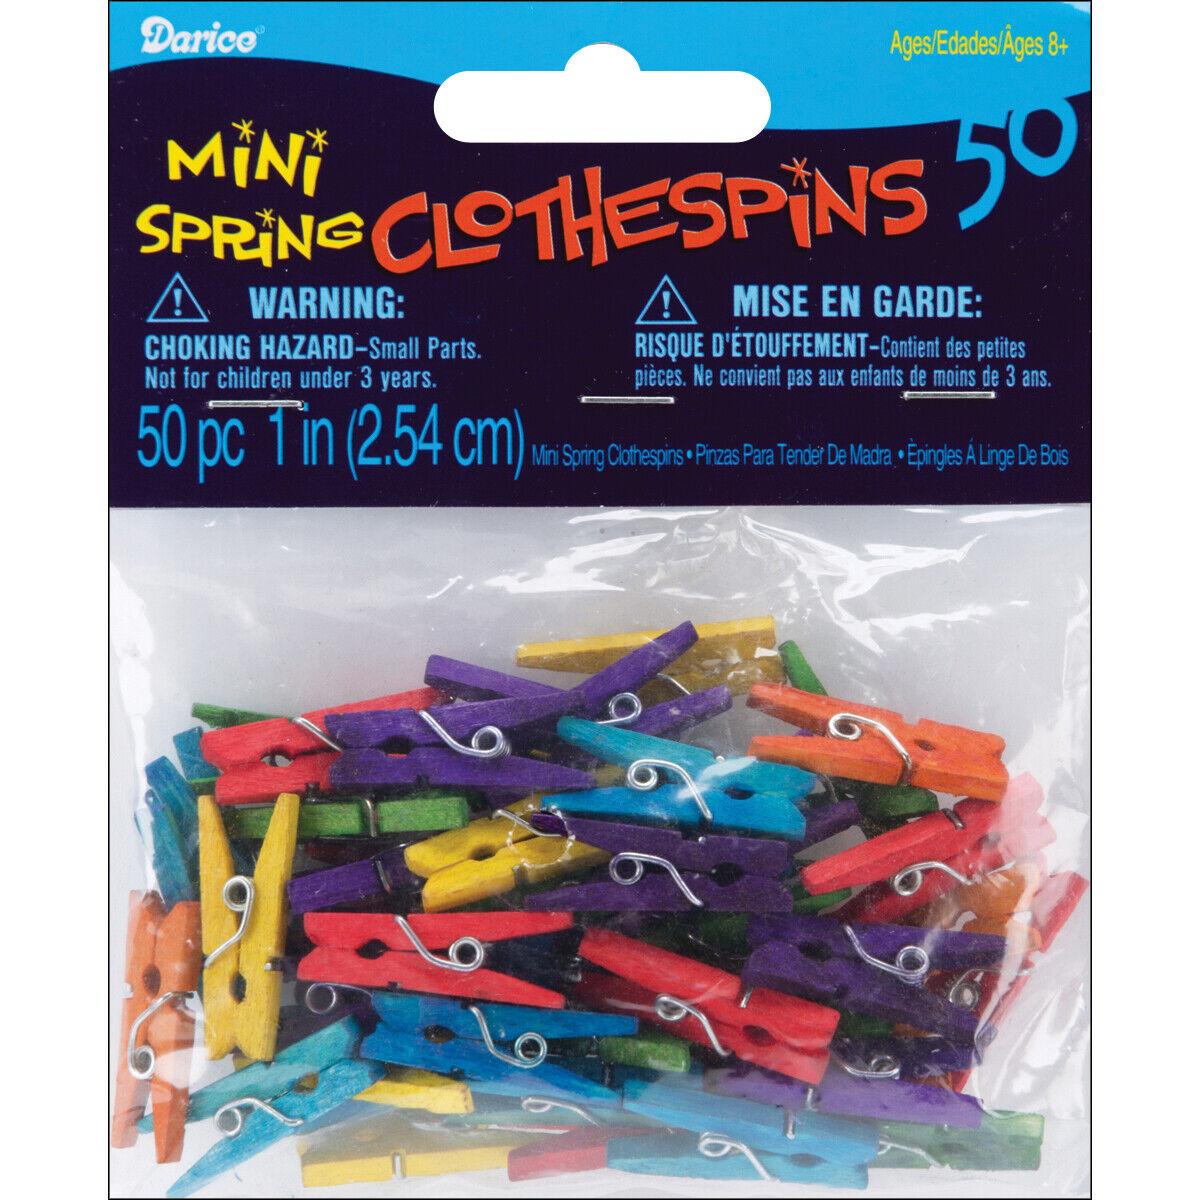 Darice Mini Spring Clothespins Multicolored 1 Inches